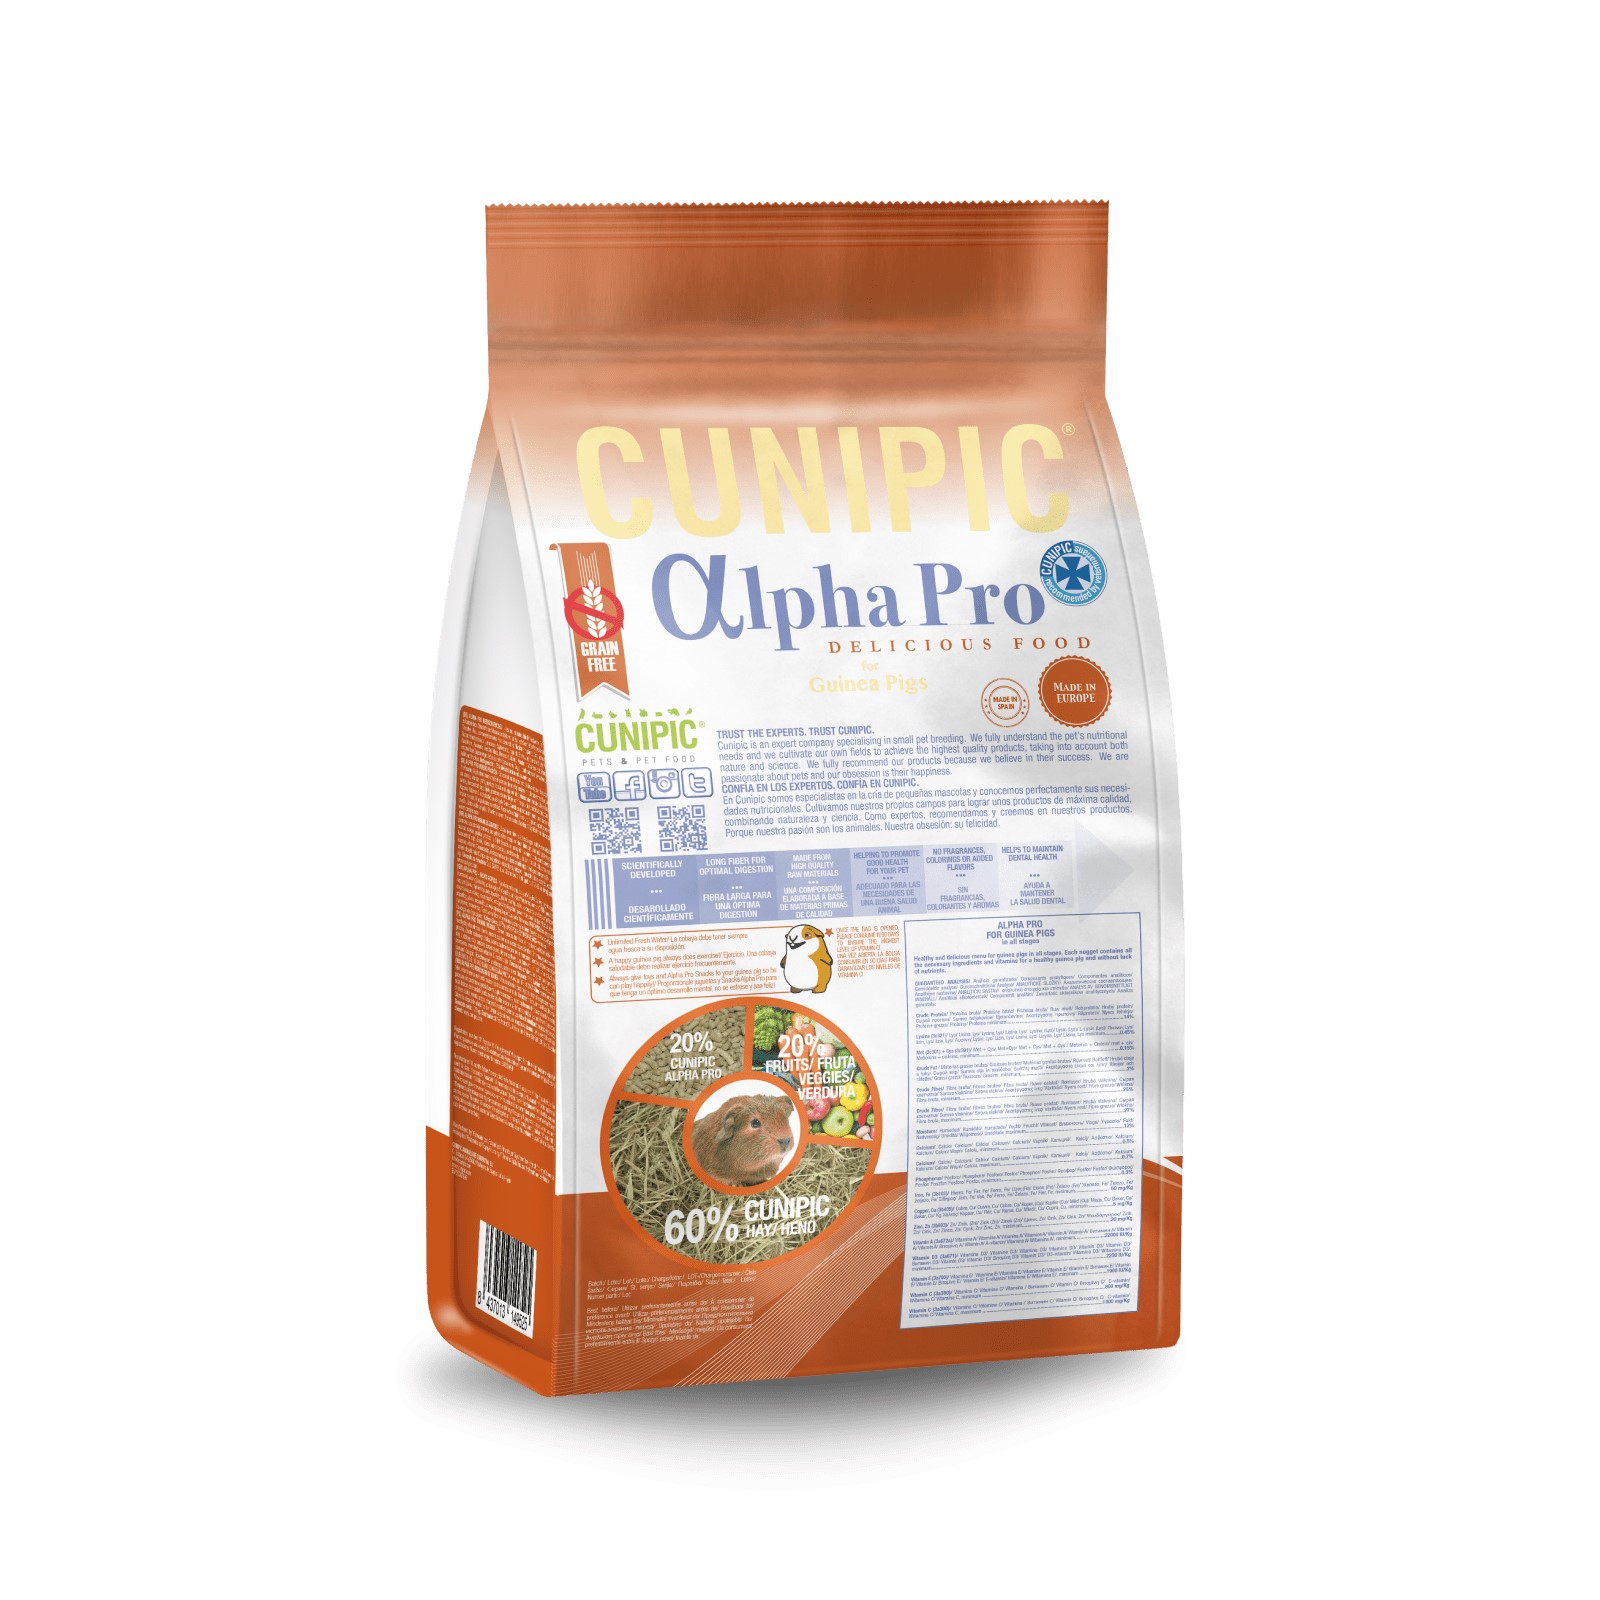 Cunipic Alpha Pro porcellino d'India Alimento completo per porcellino d'India